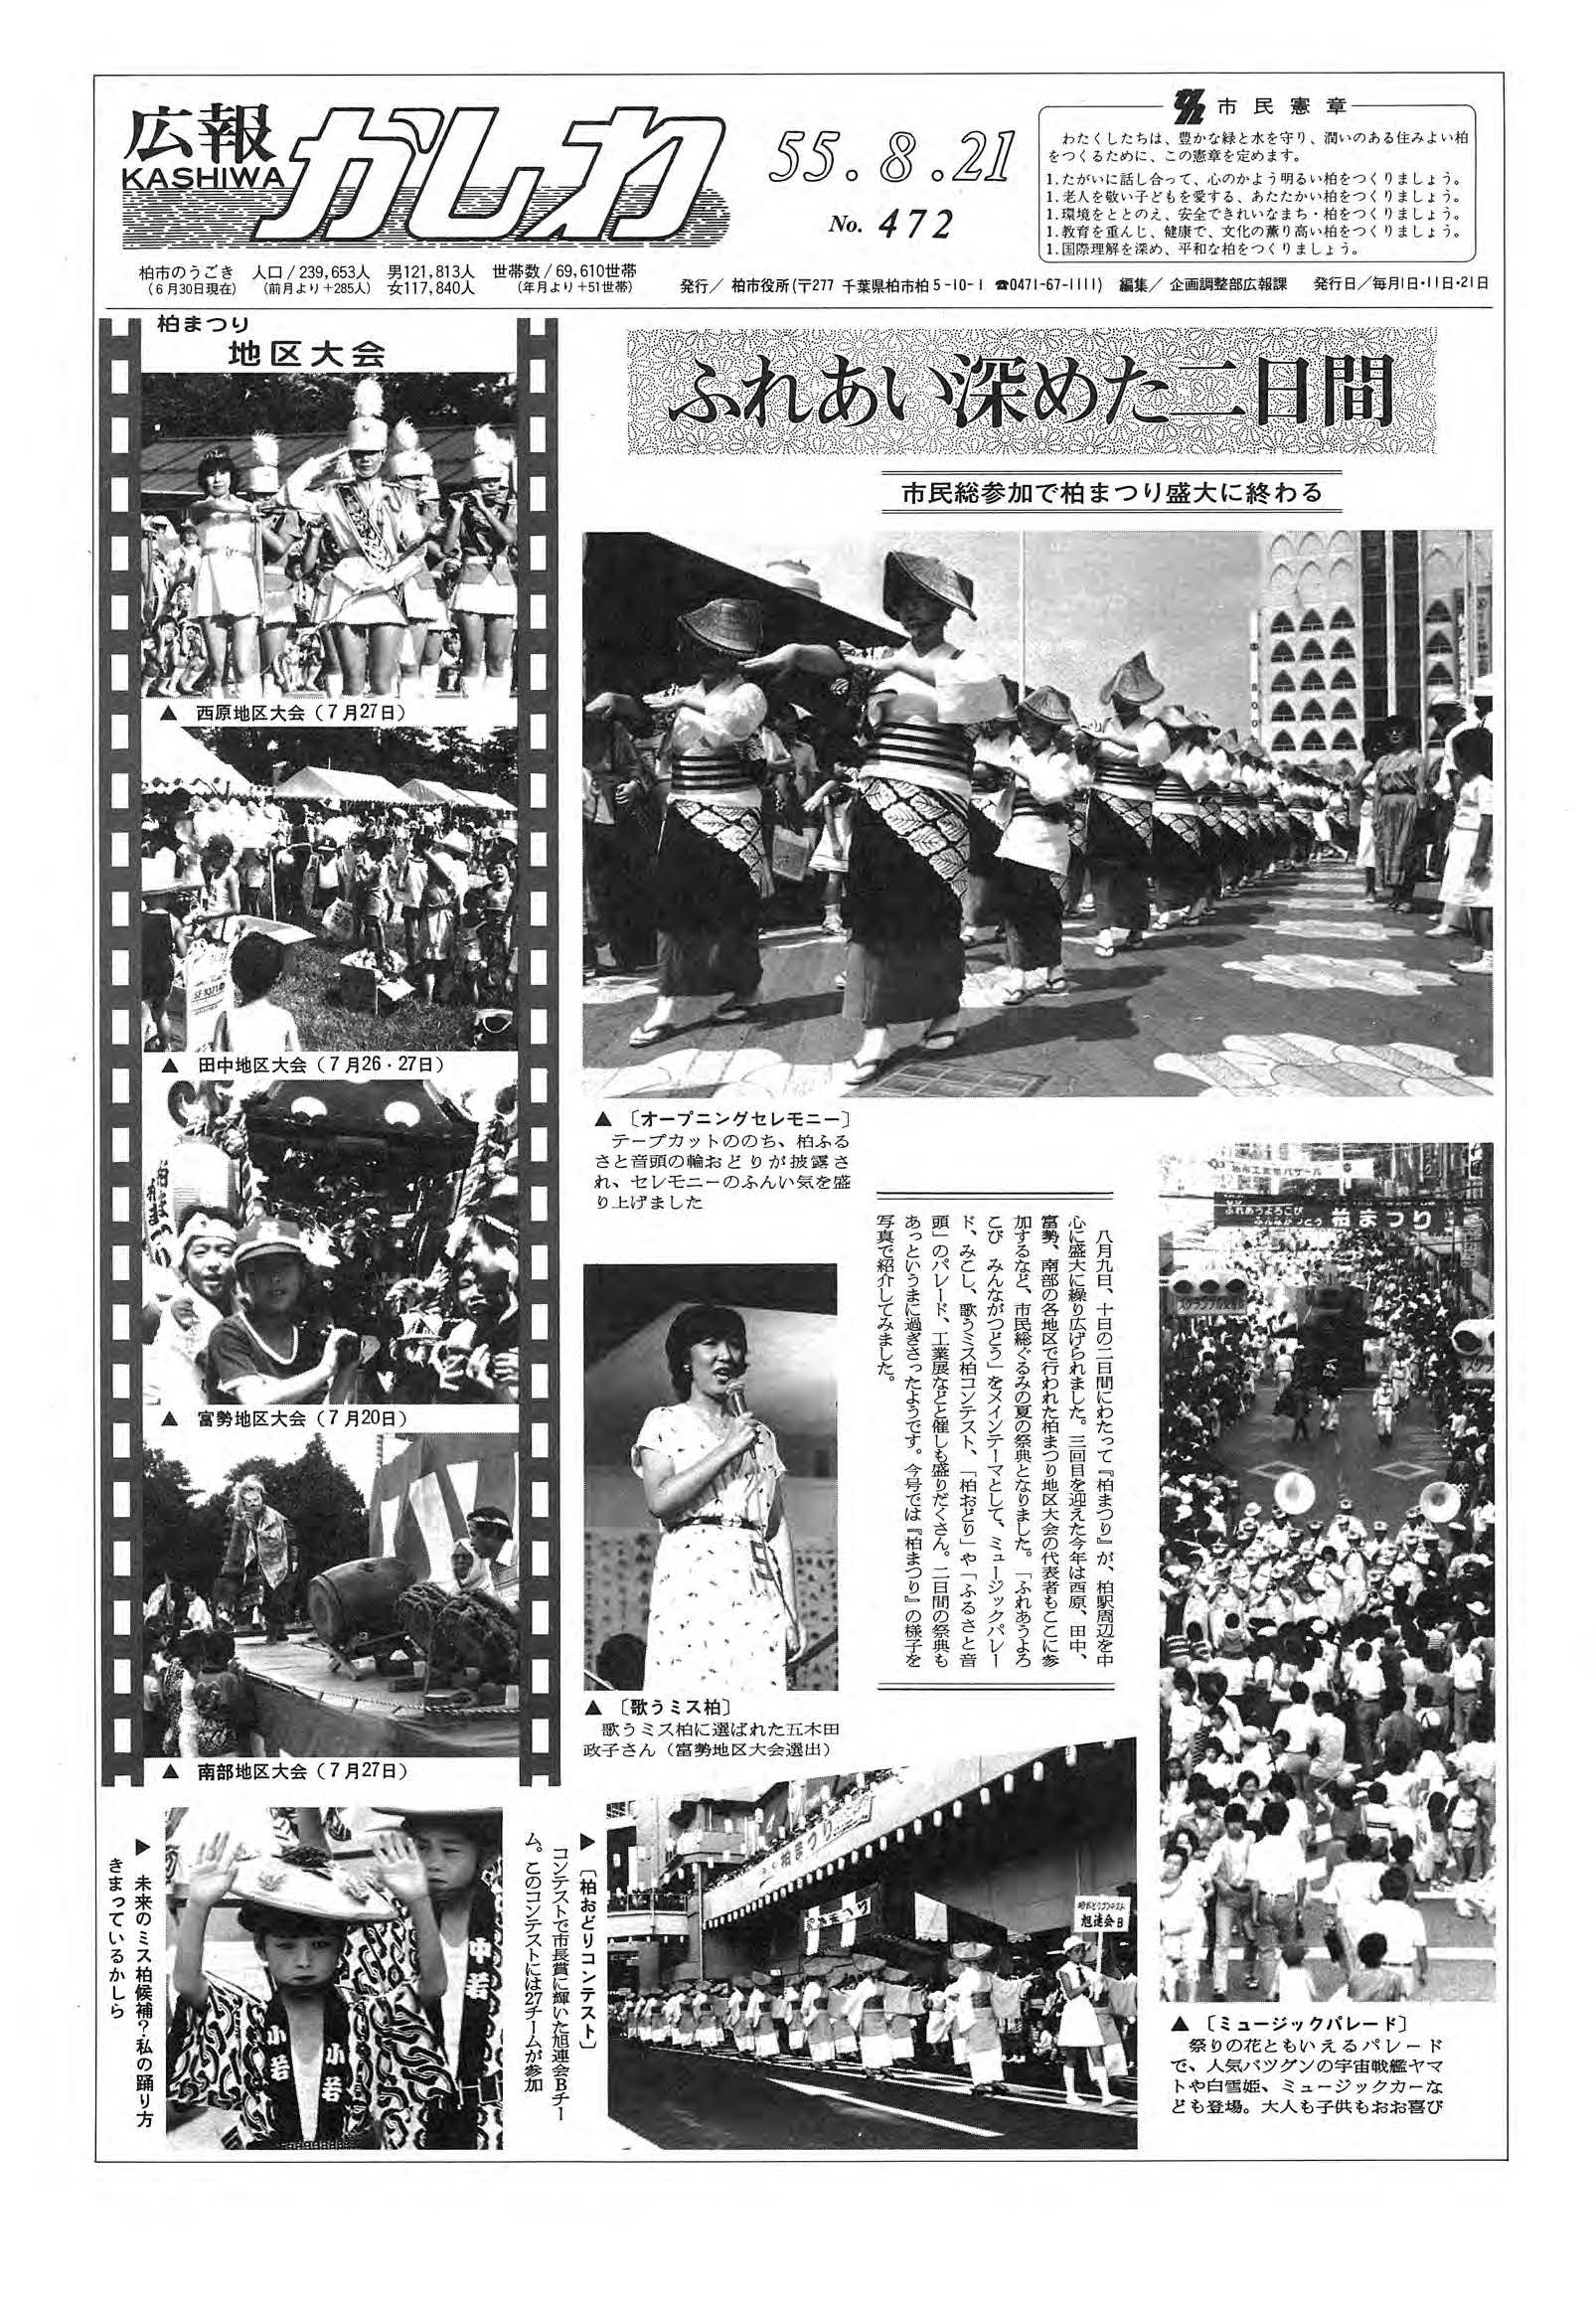 広報かしわ　昭和55年8月21日発行　472号